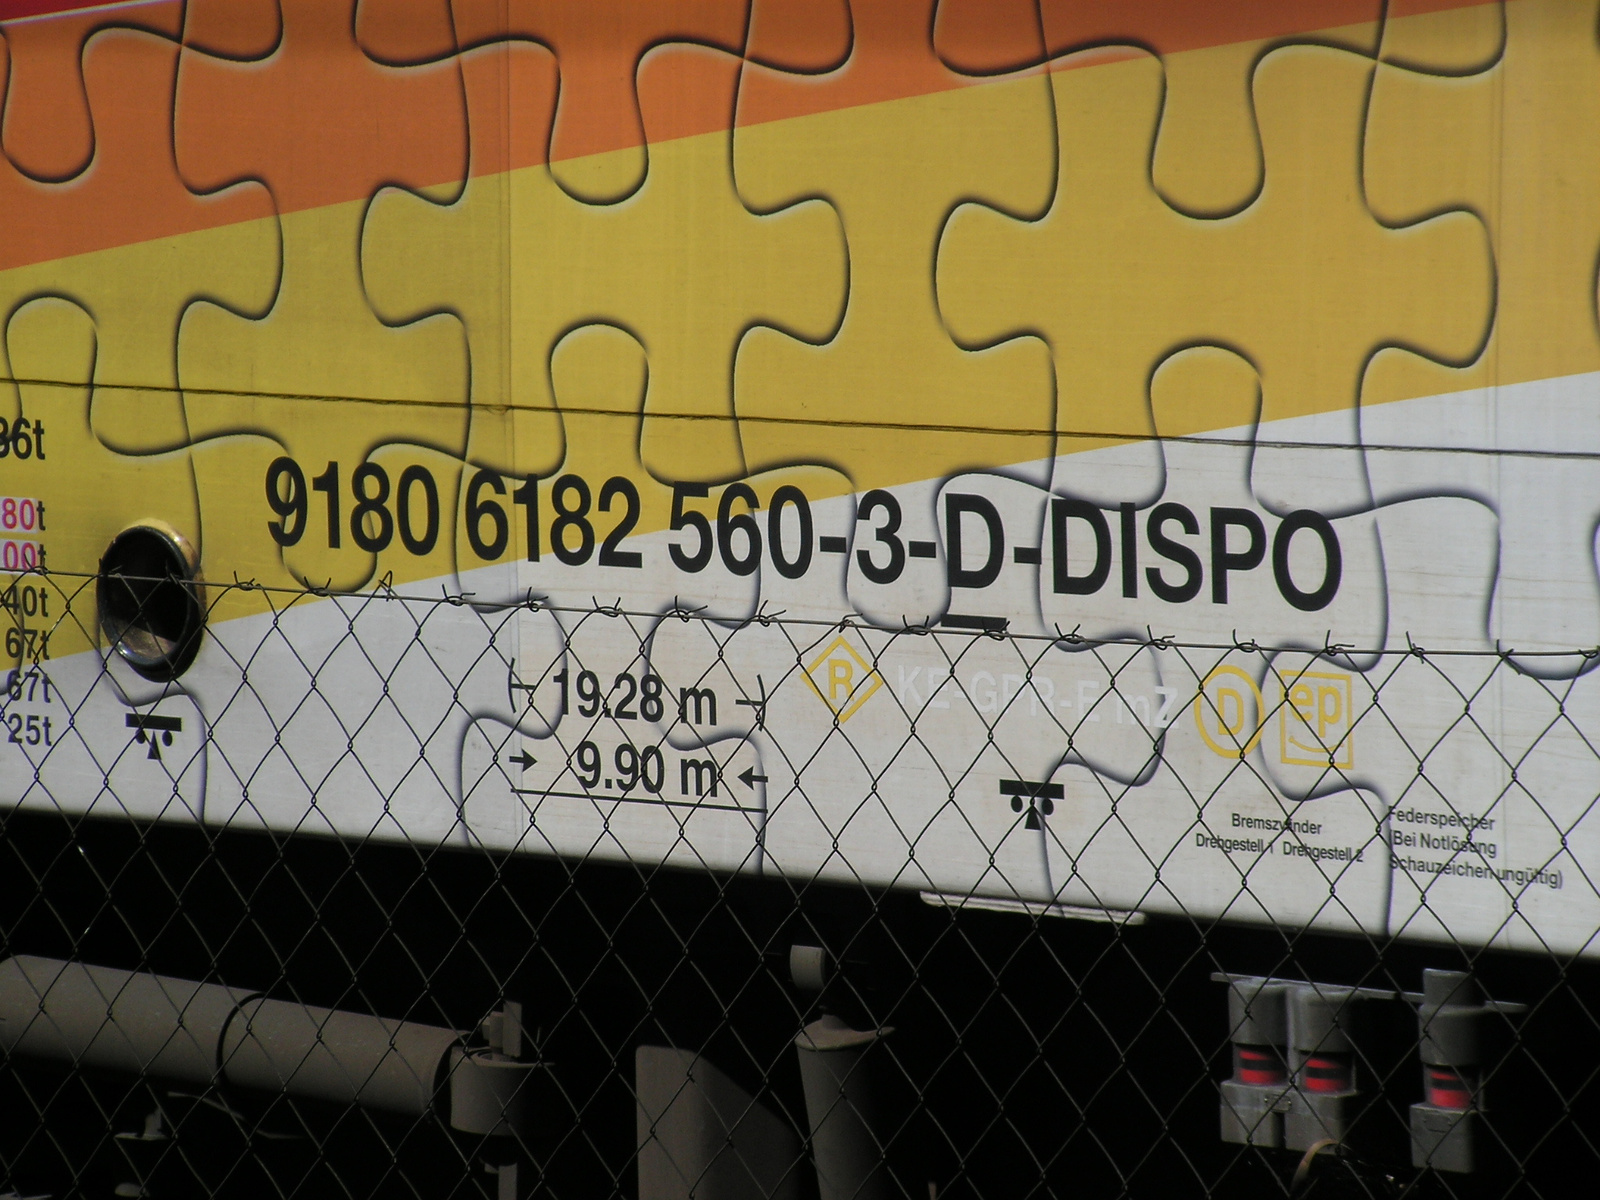 D-DISPO 9180 6182 560-3, SzG3